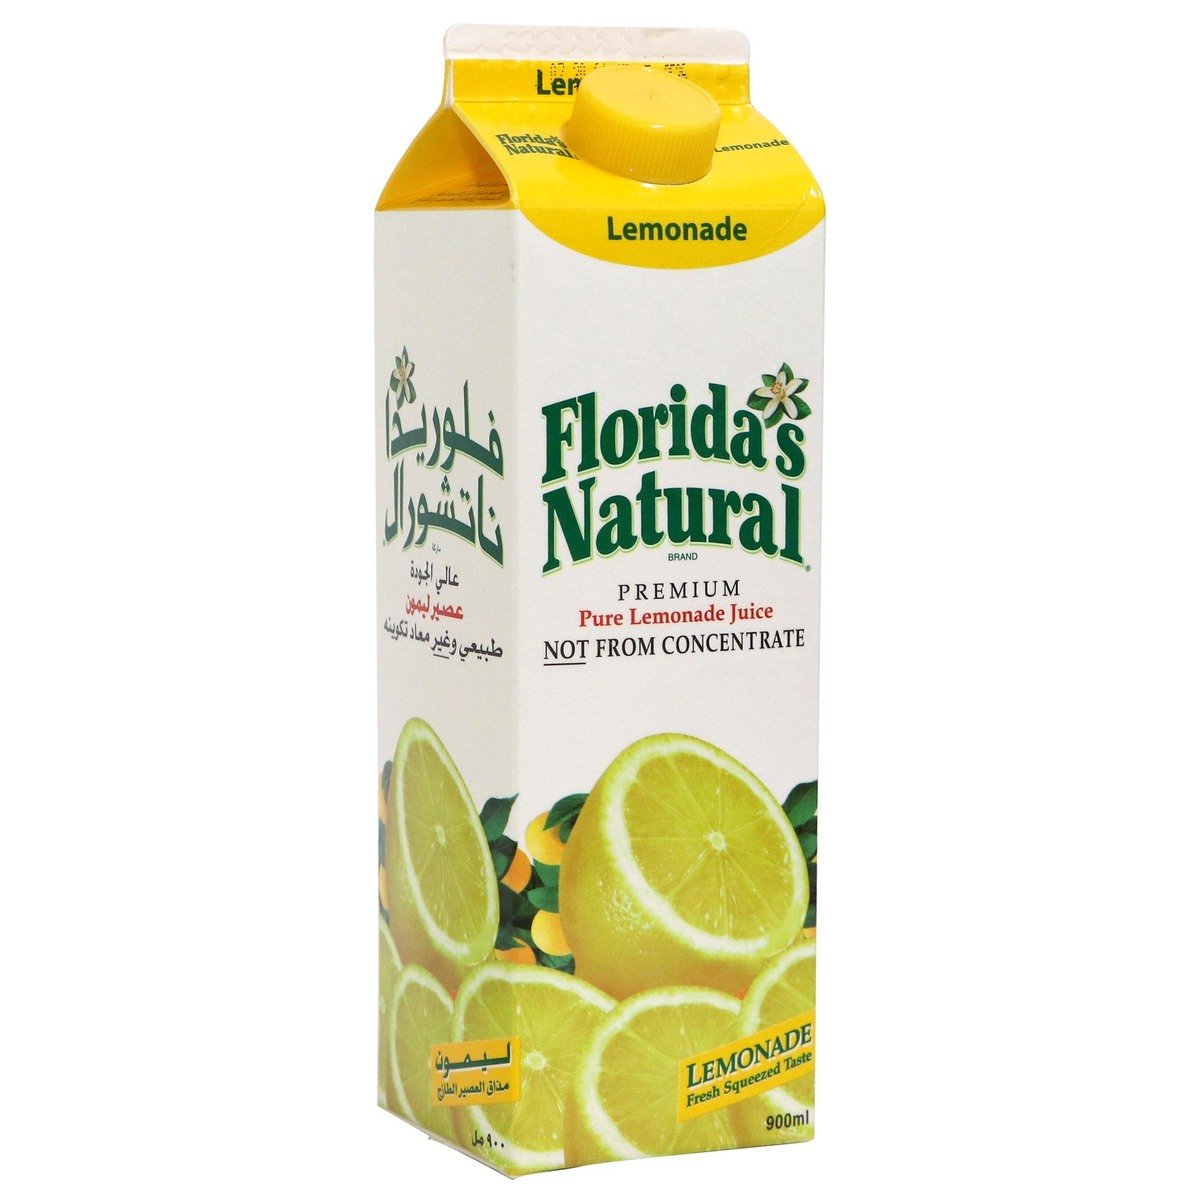 Florida's Natural Premium Lemonade Juice 900 ml